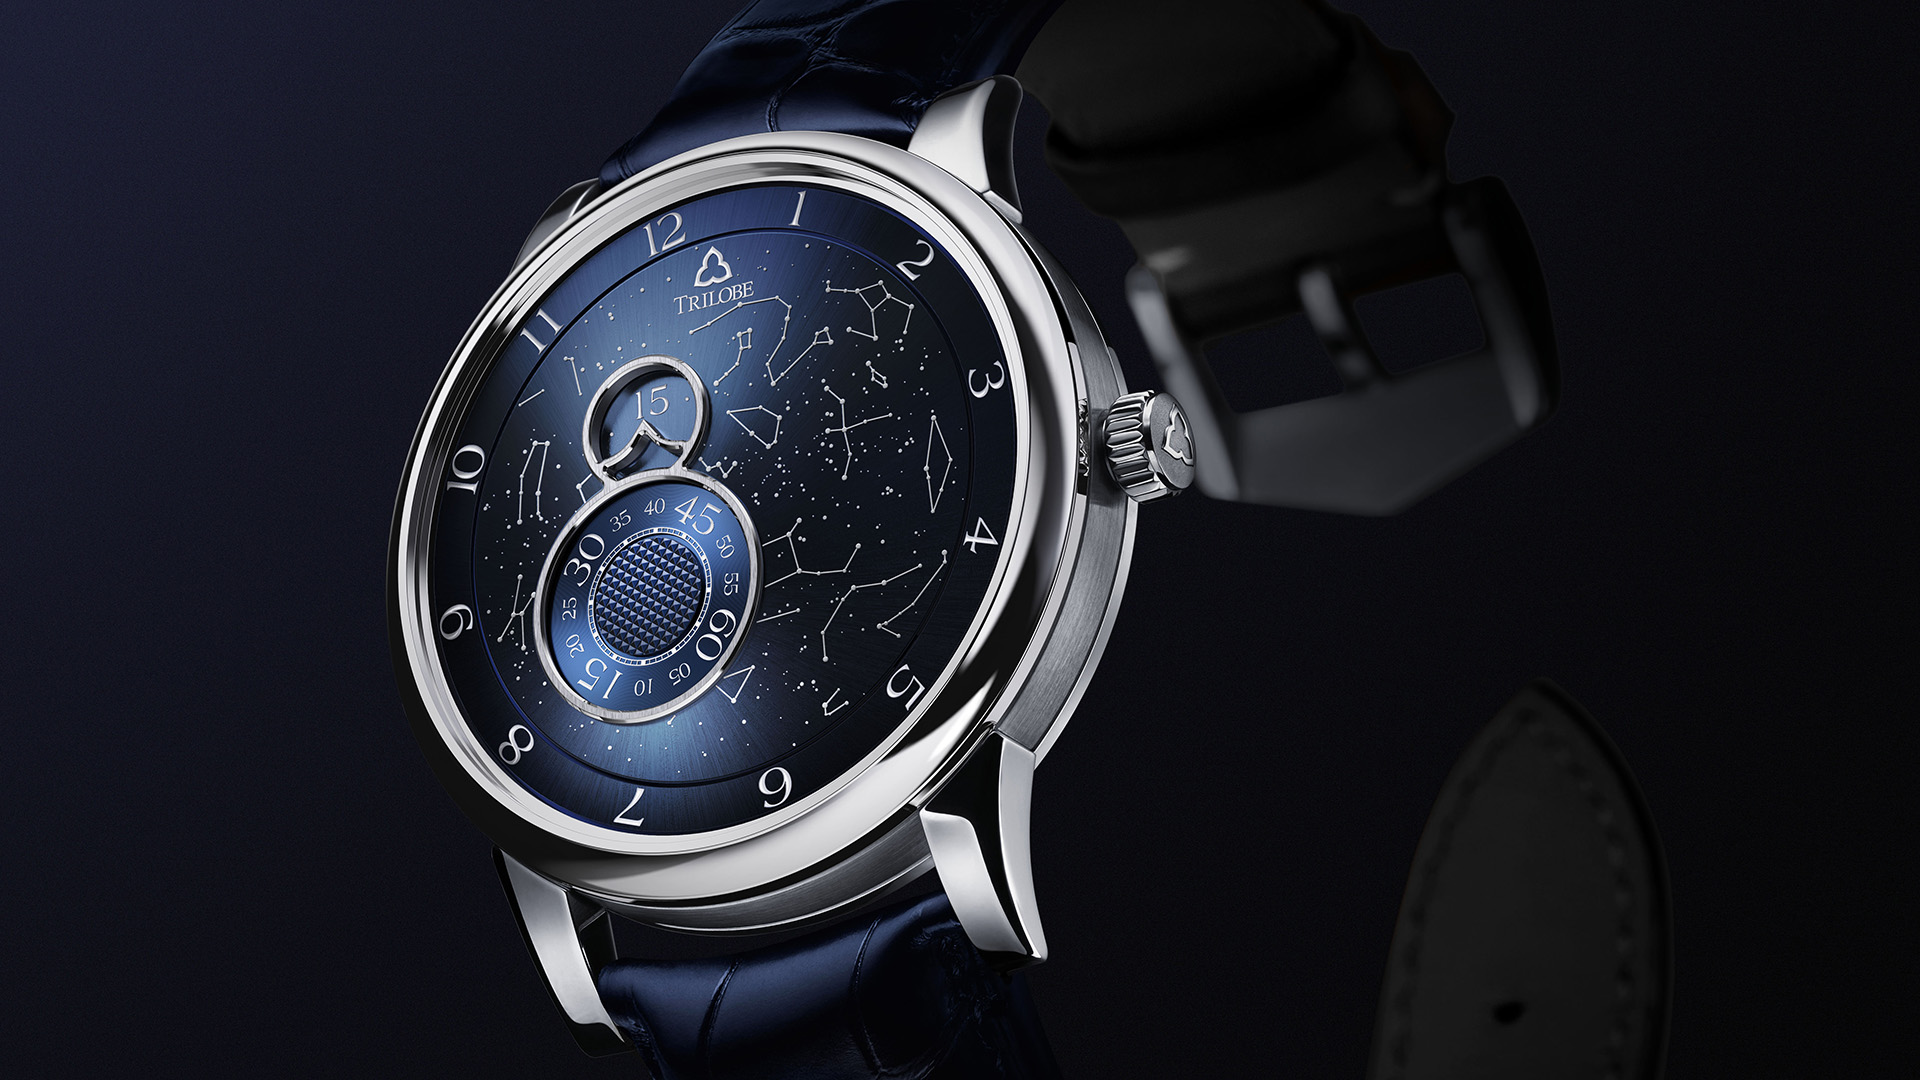 Trilobe Announces Nuit Fantastique Watch Collection